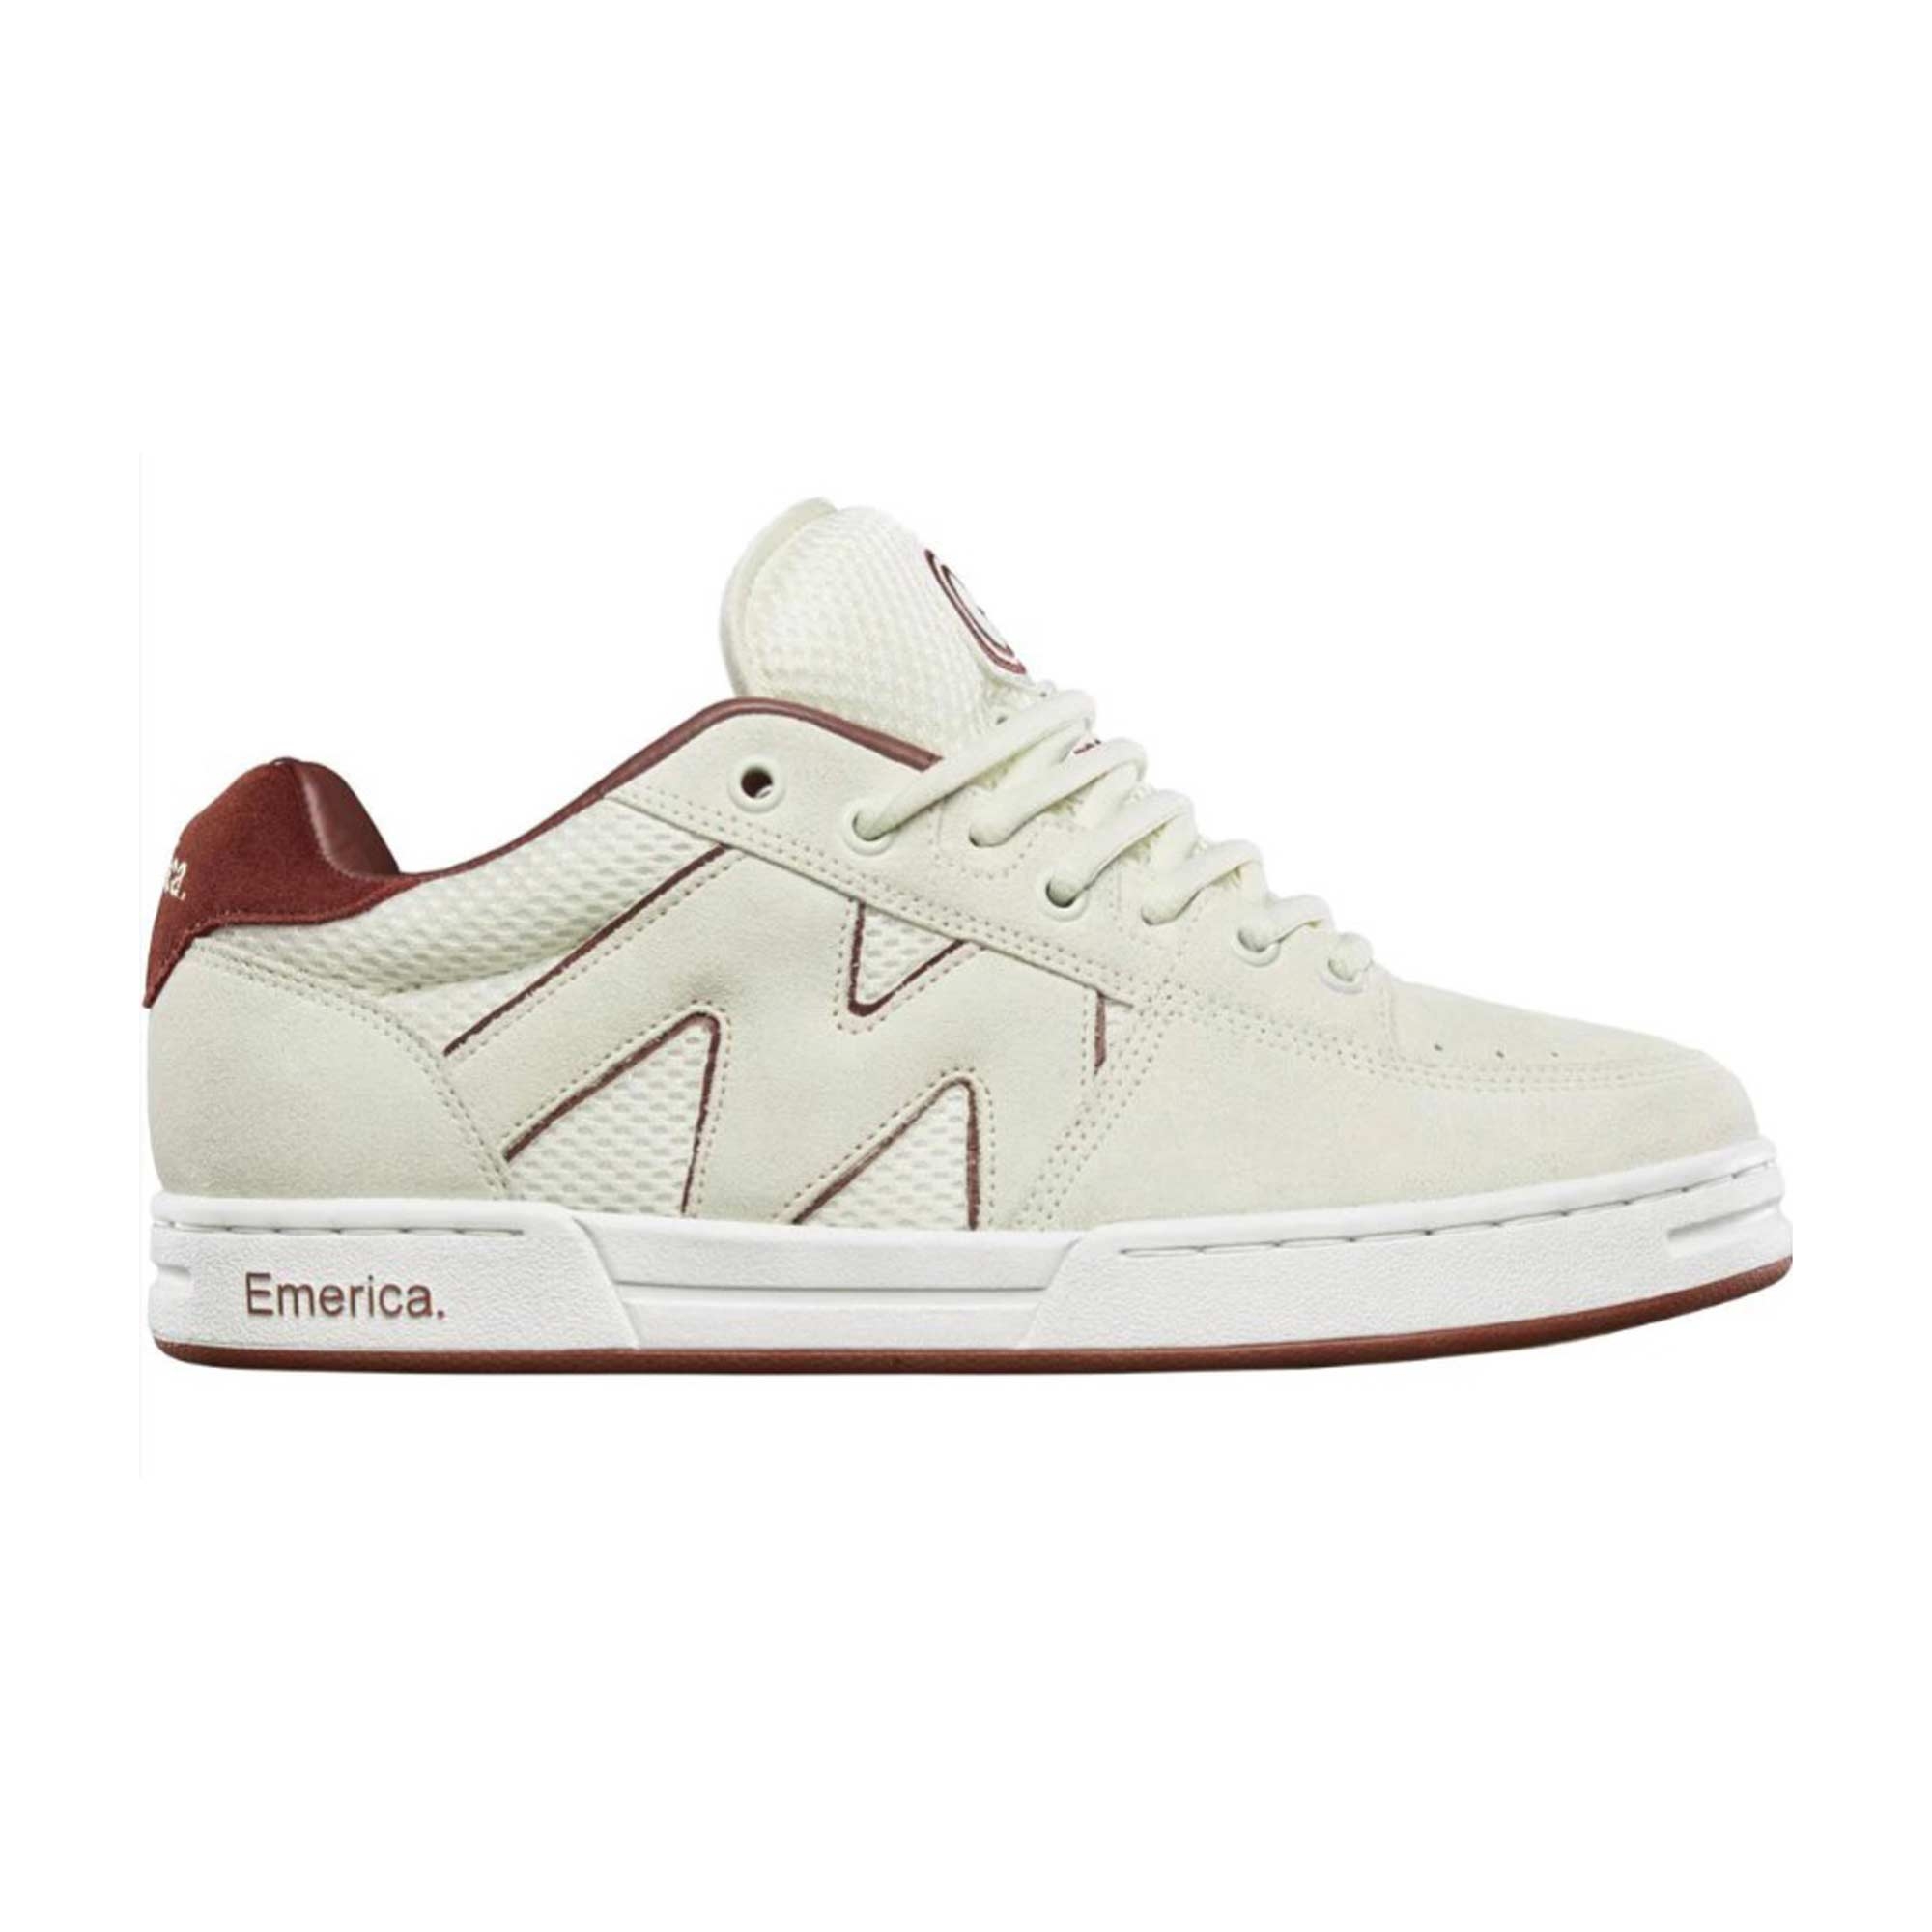 EMERICA Shoe OG-1 whi/bur white/burgundy